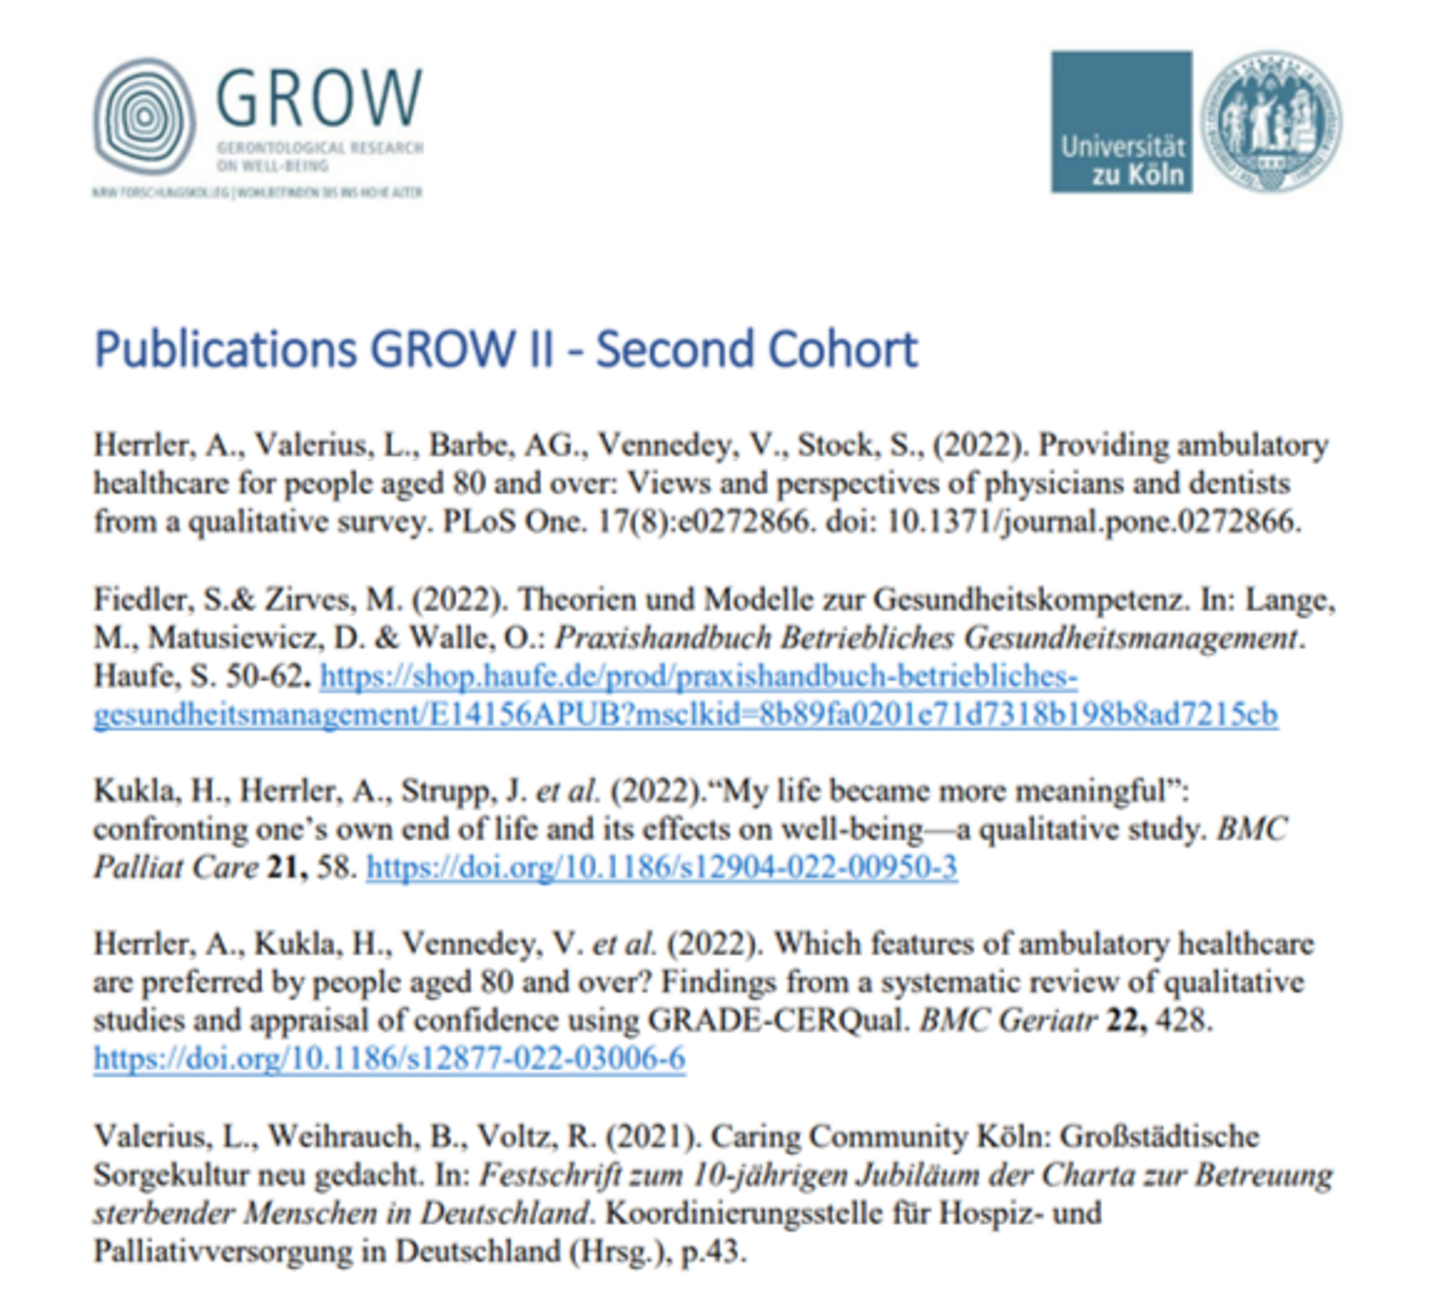 Publications GROW II - Second Cohort